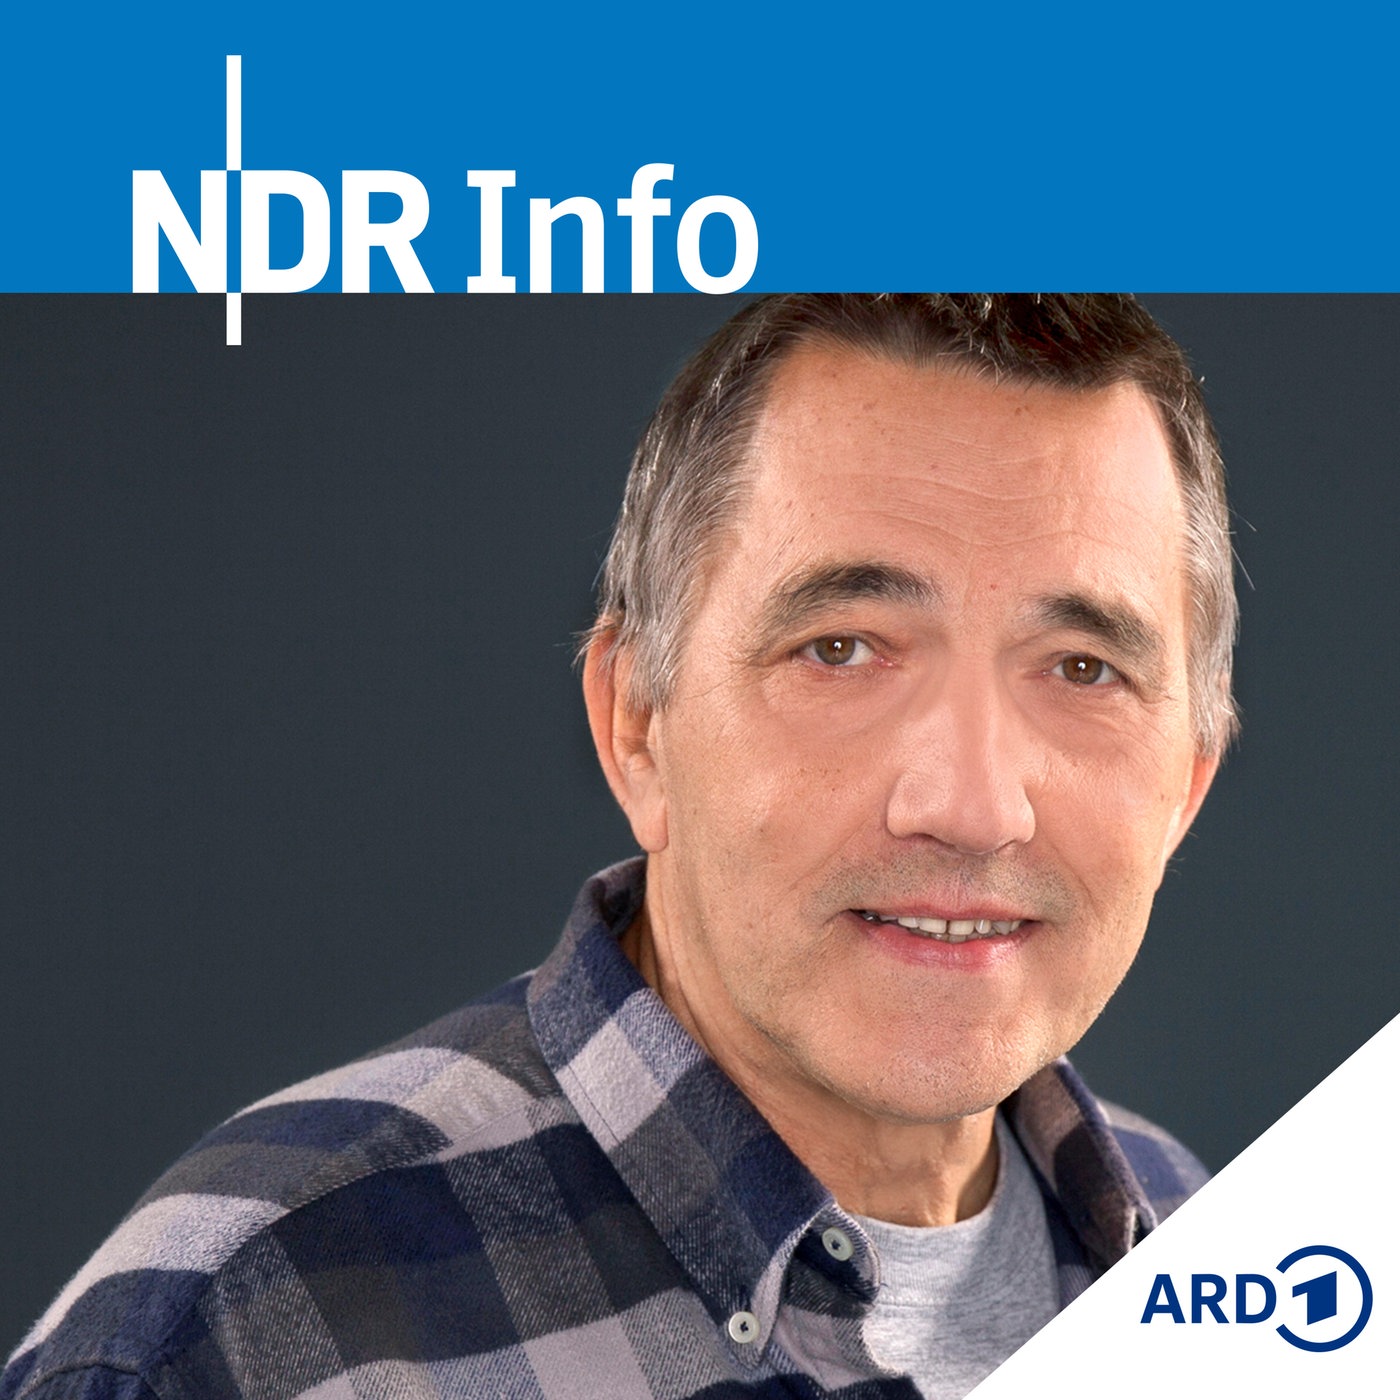 NDR Info - Der satirische Wochenrückblick